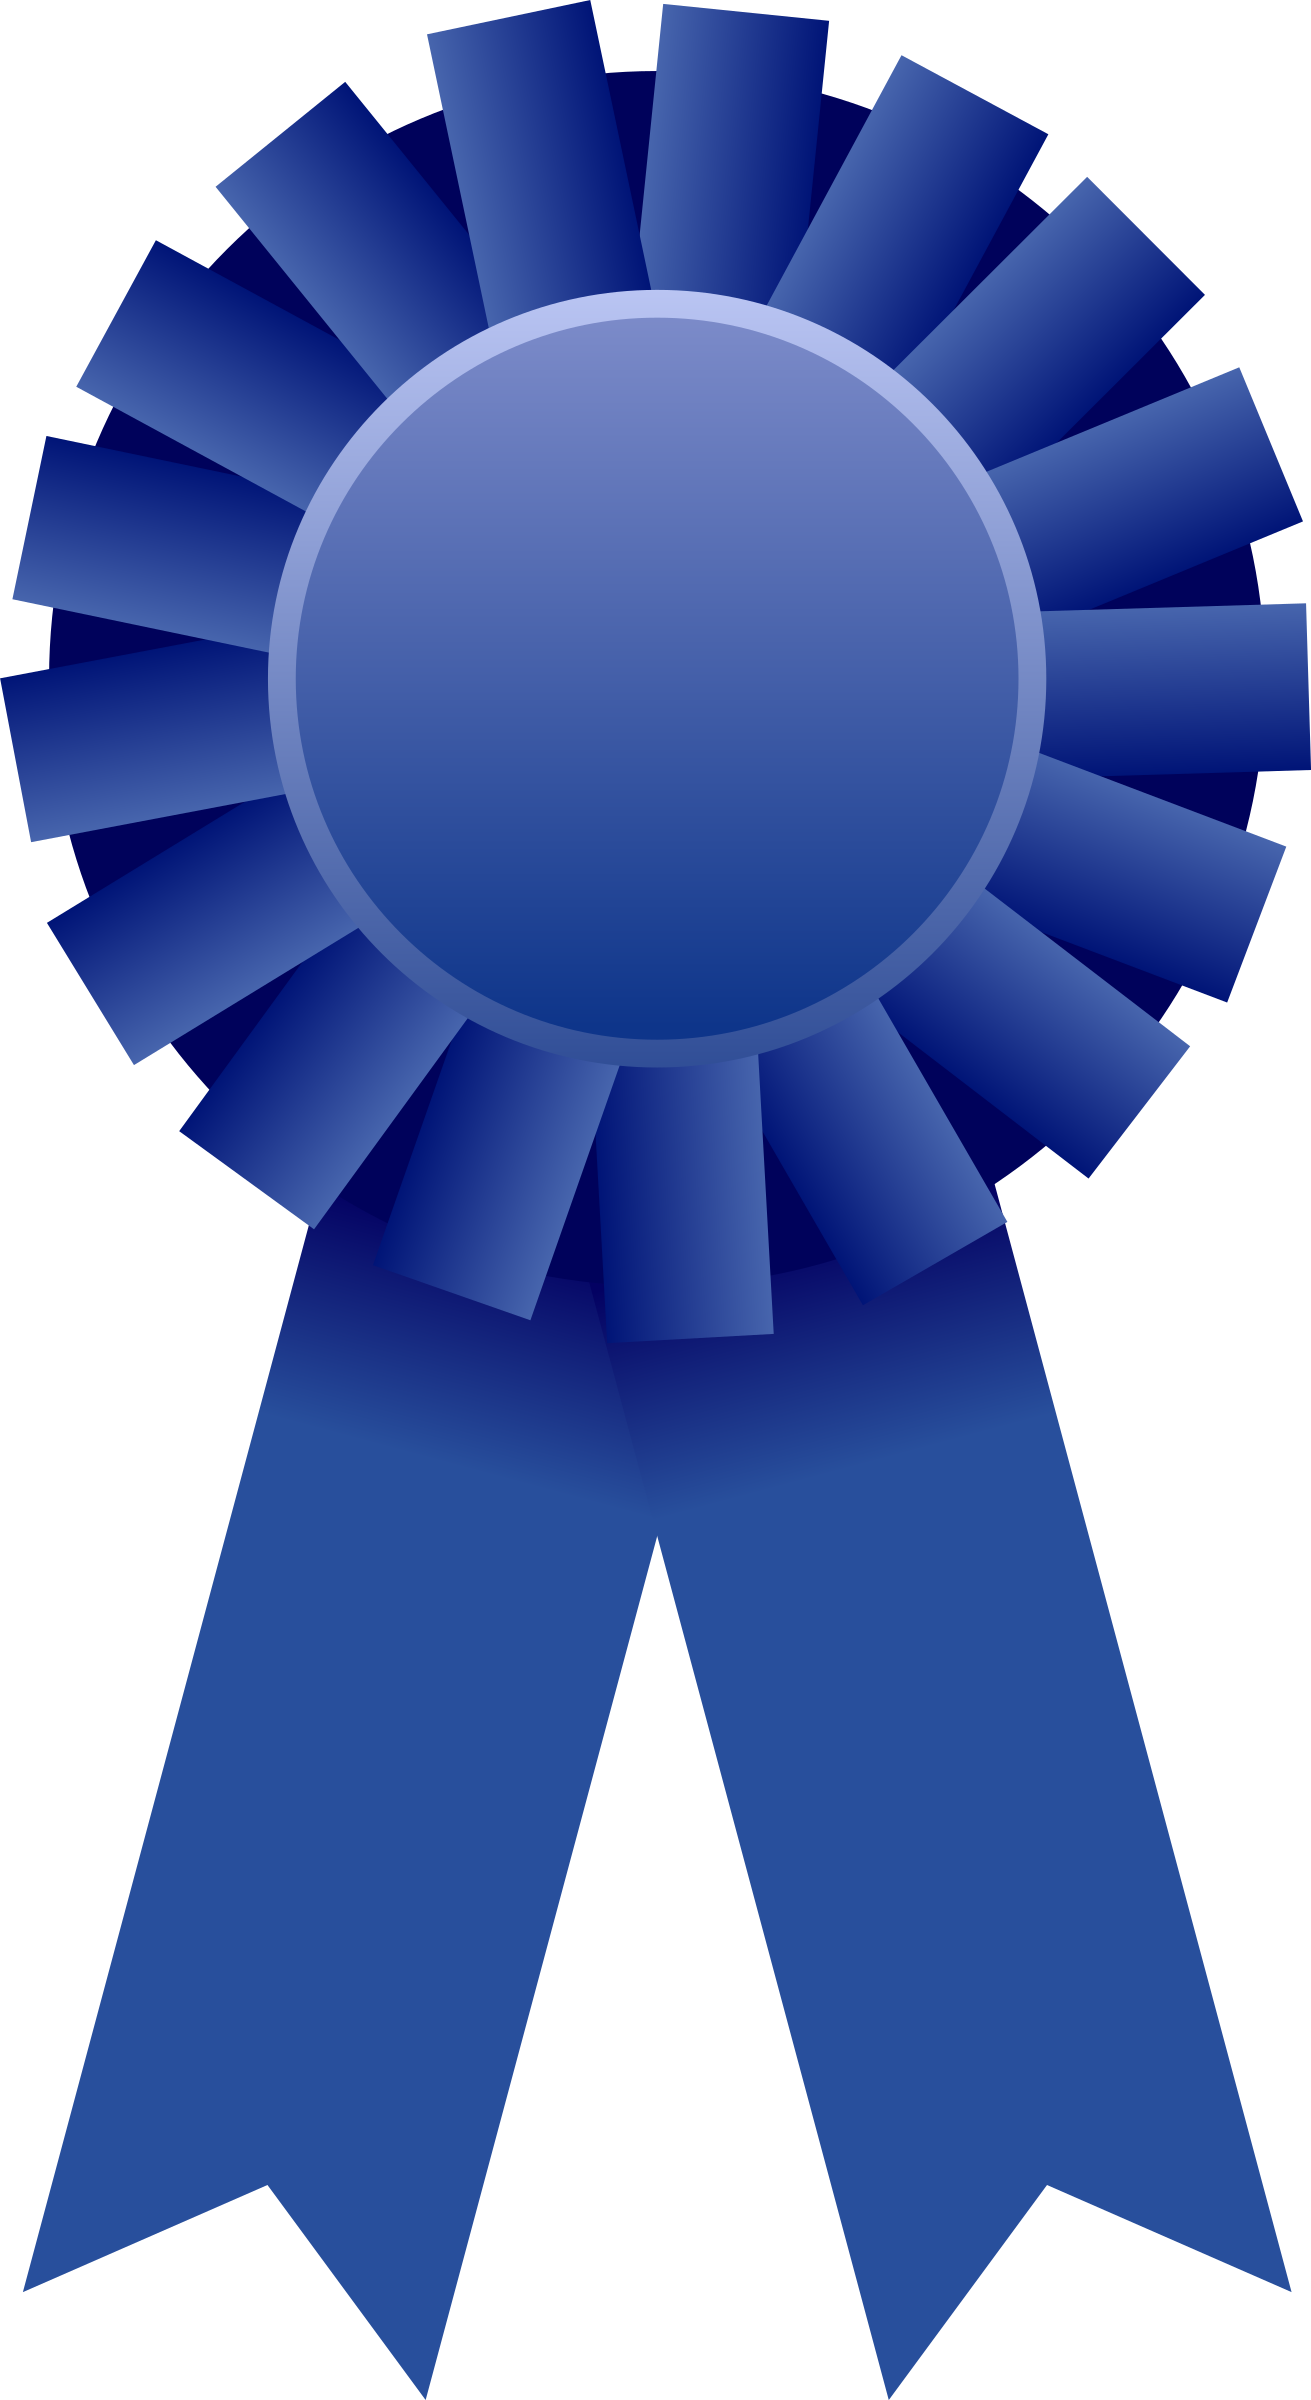 Download PNG image - Award Ribbon Badge PNG Image 